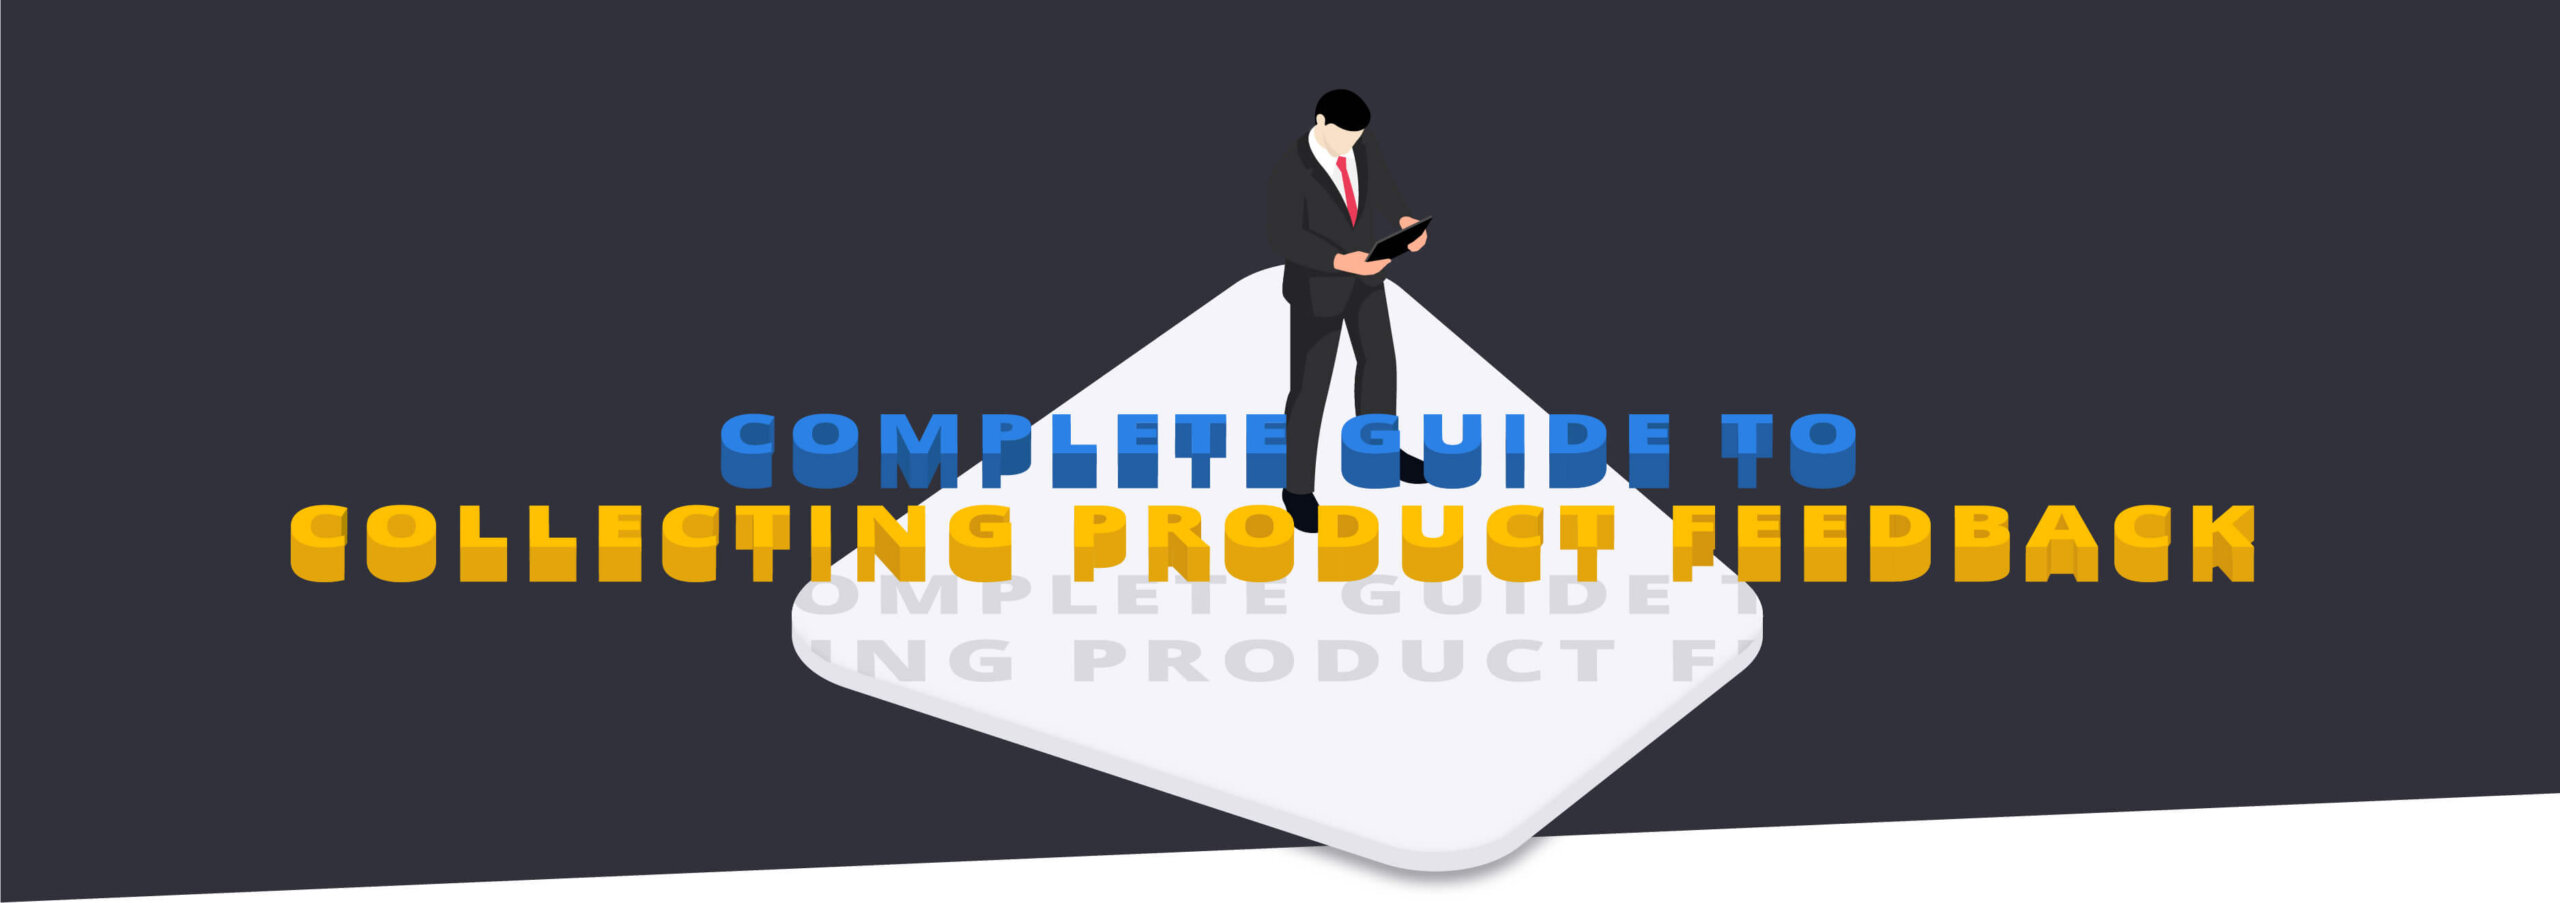 Ein Produktfeedback Guide